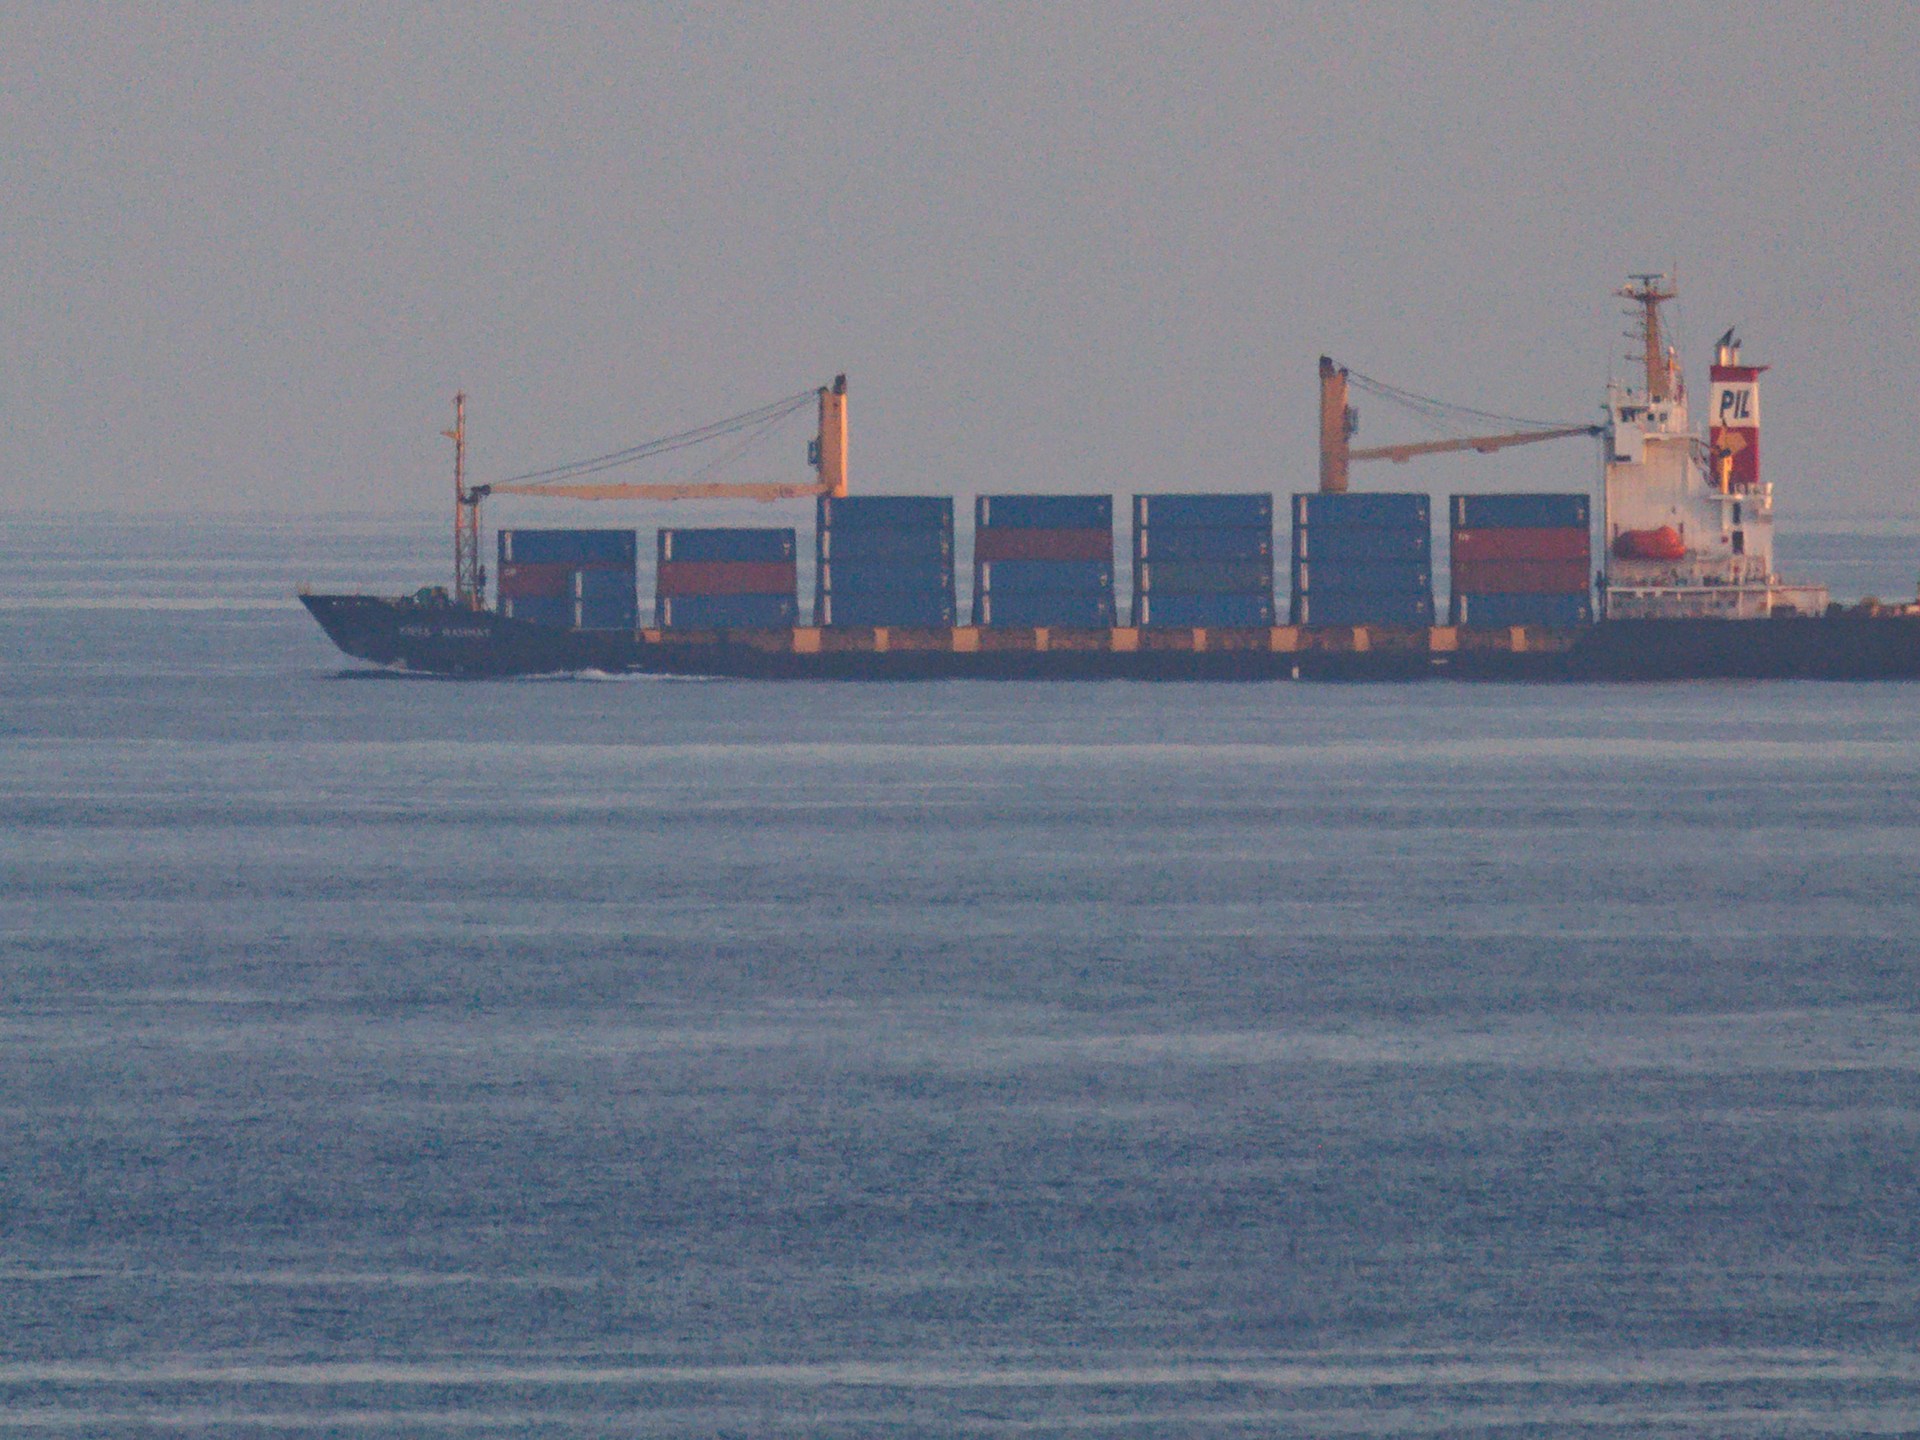 هجوم جديد بصاروخين على سفينة قبالة سواحل اليمن | أخبار – البوكس نيوز